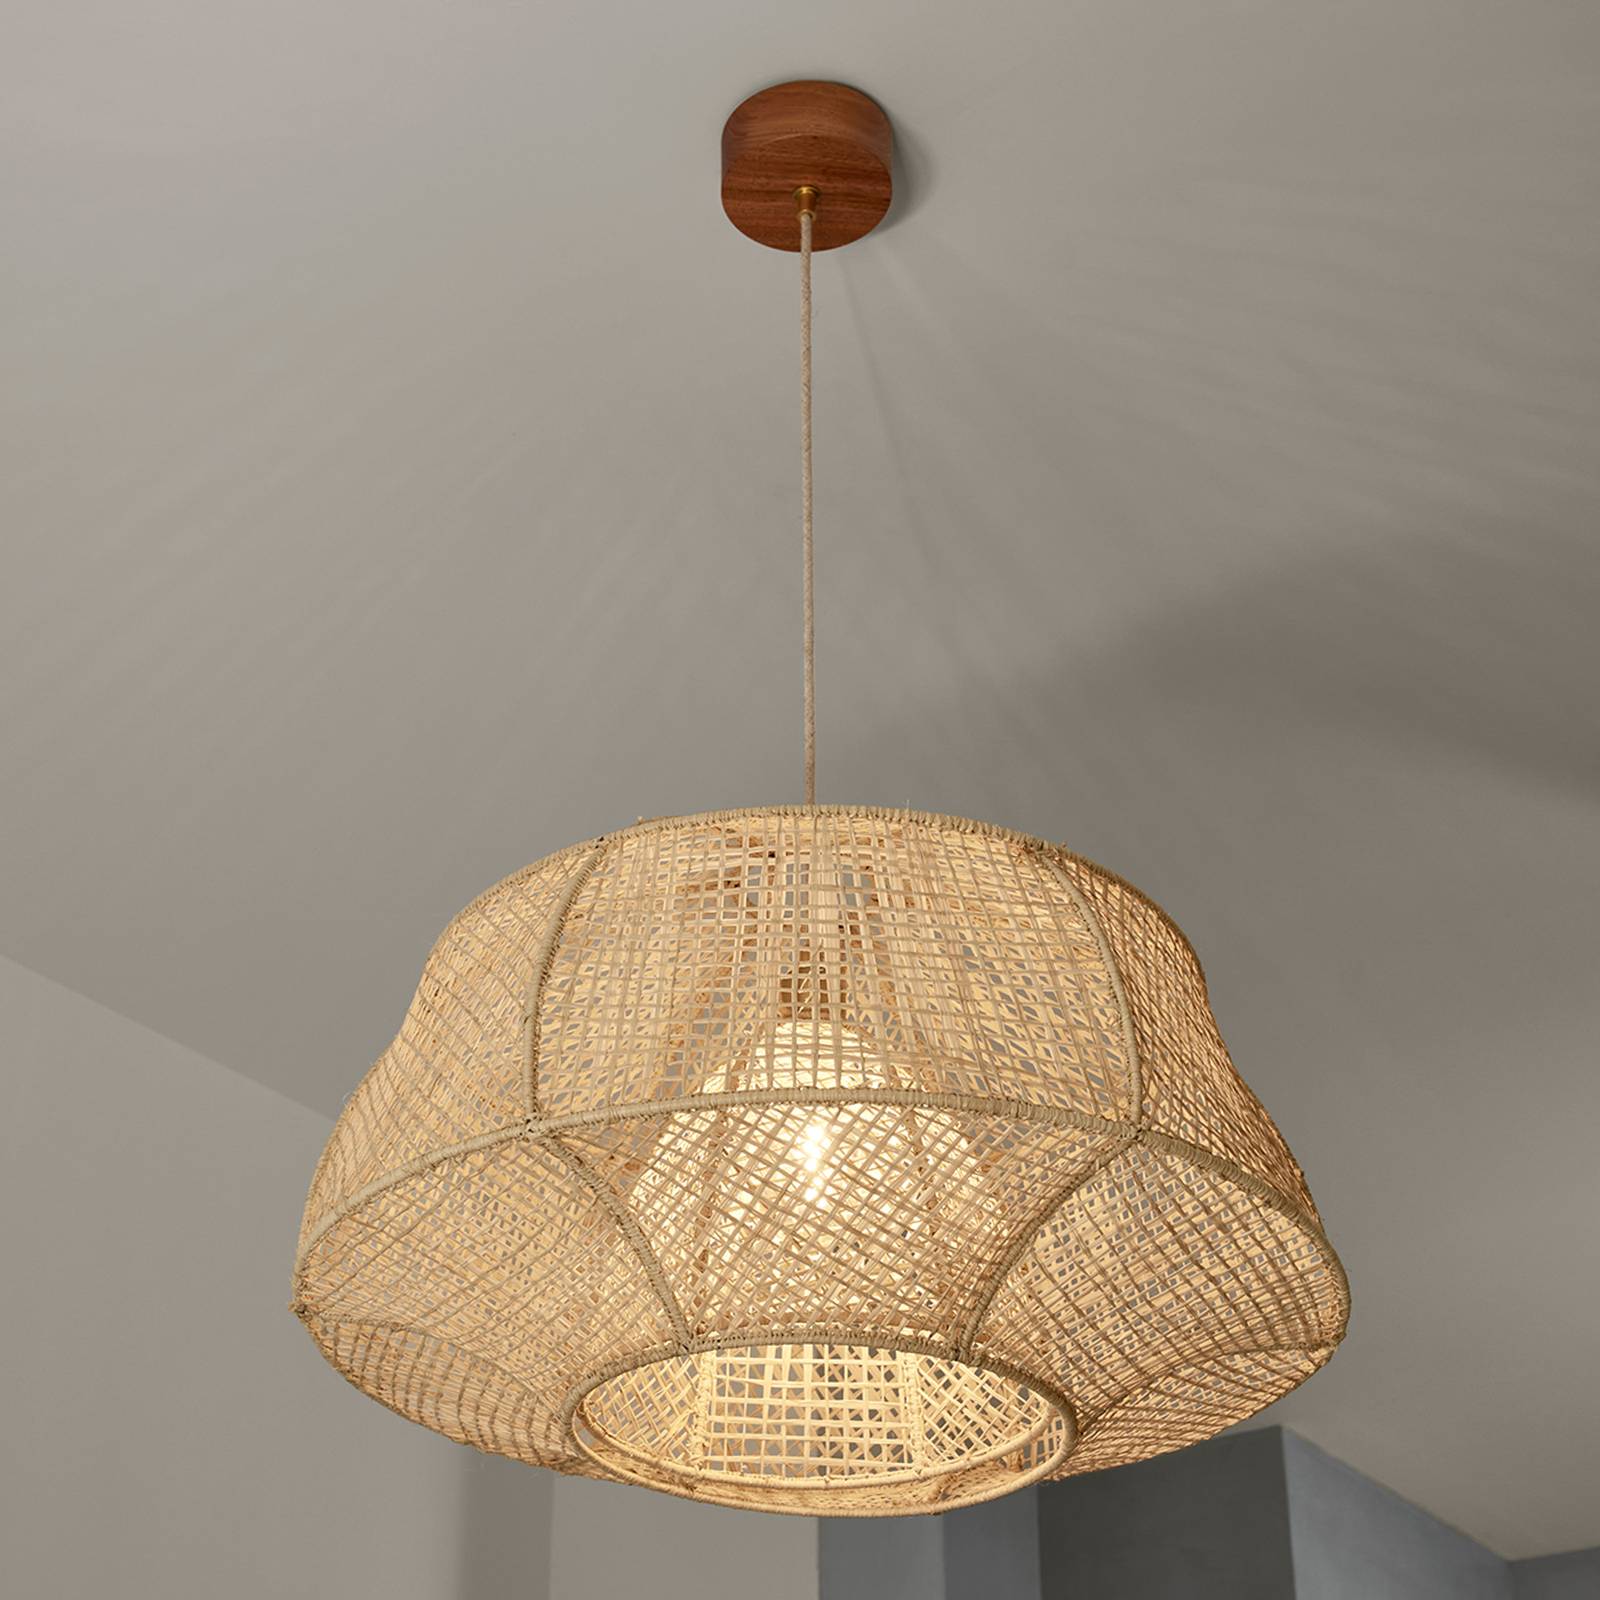 MARKET SET Odyssée függő lámpa, pálmarost, Ø 78 cm